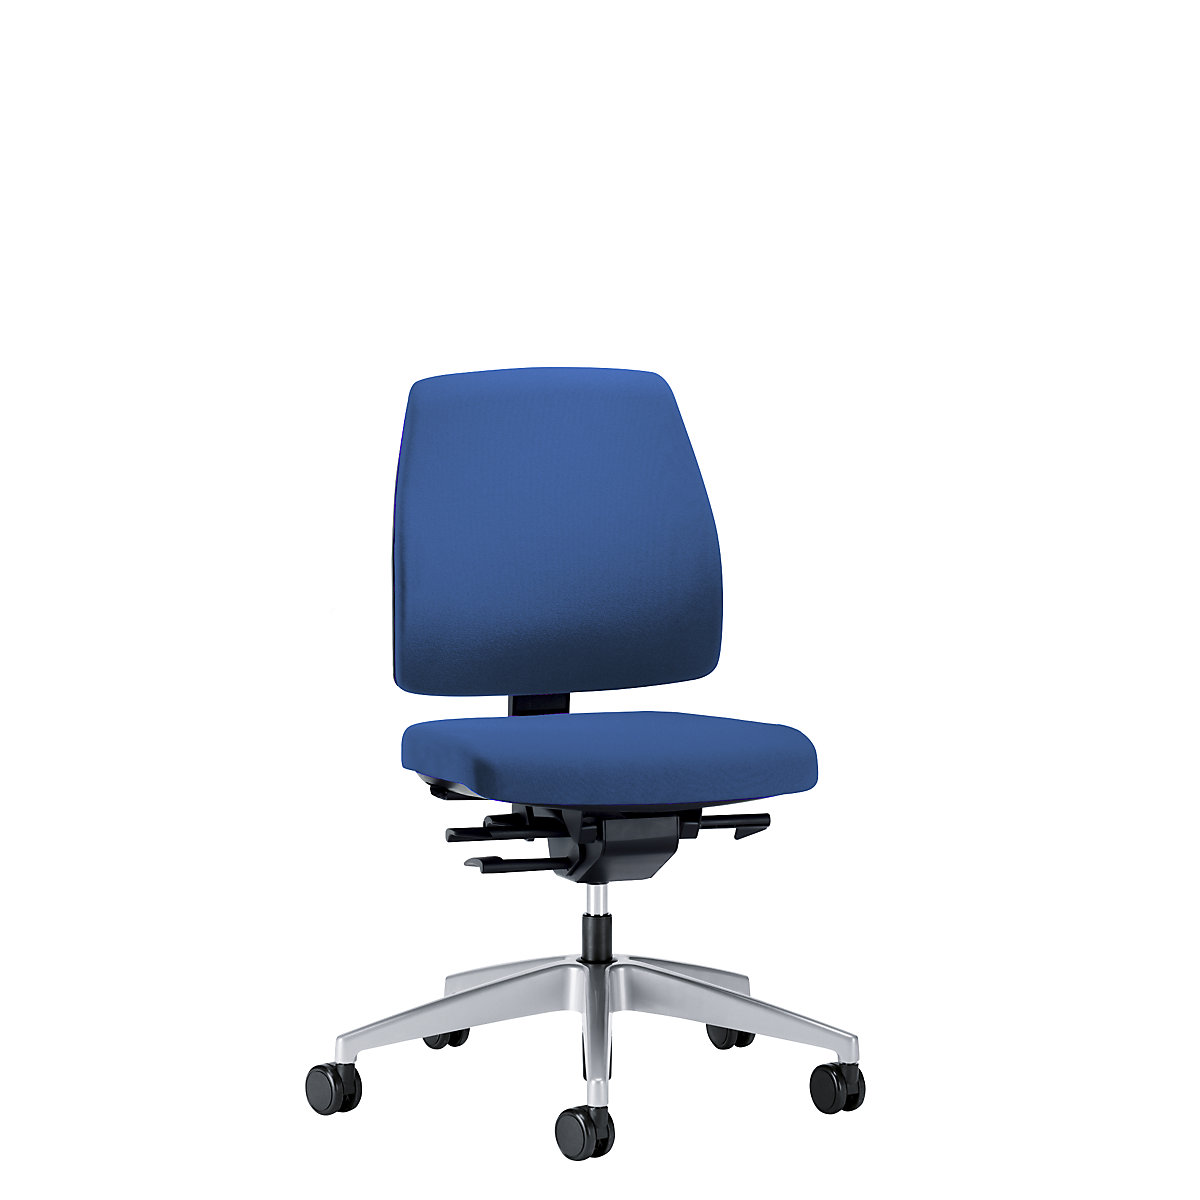 Obrotowe krzesło biurowe GOAL, wys. oparcia 430 mm – interstuhl, szkielet brylantowo-srebrny, z miękkimi rolkami, niebieski gencjanowy, głęb. siedziska 410 mm-1